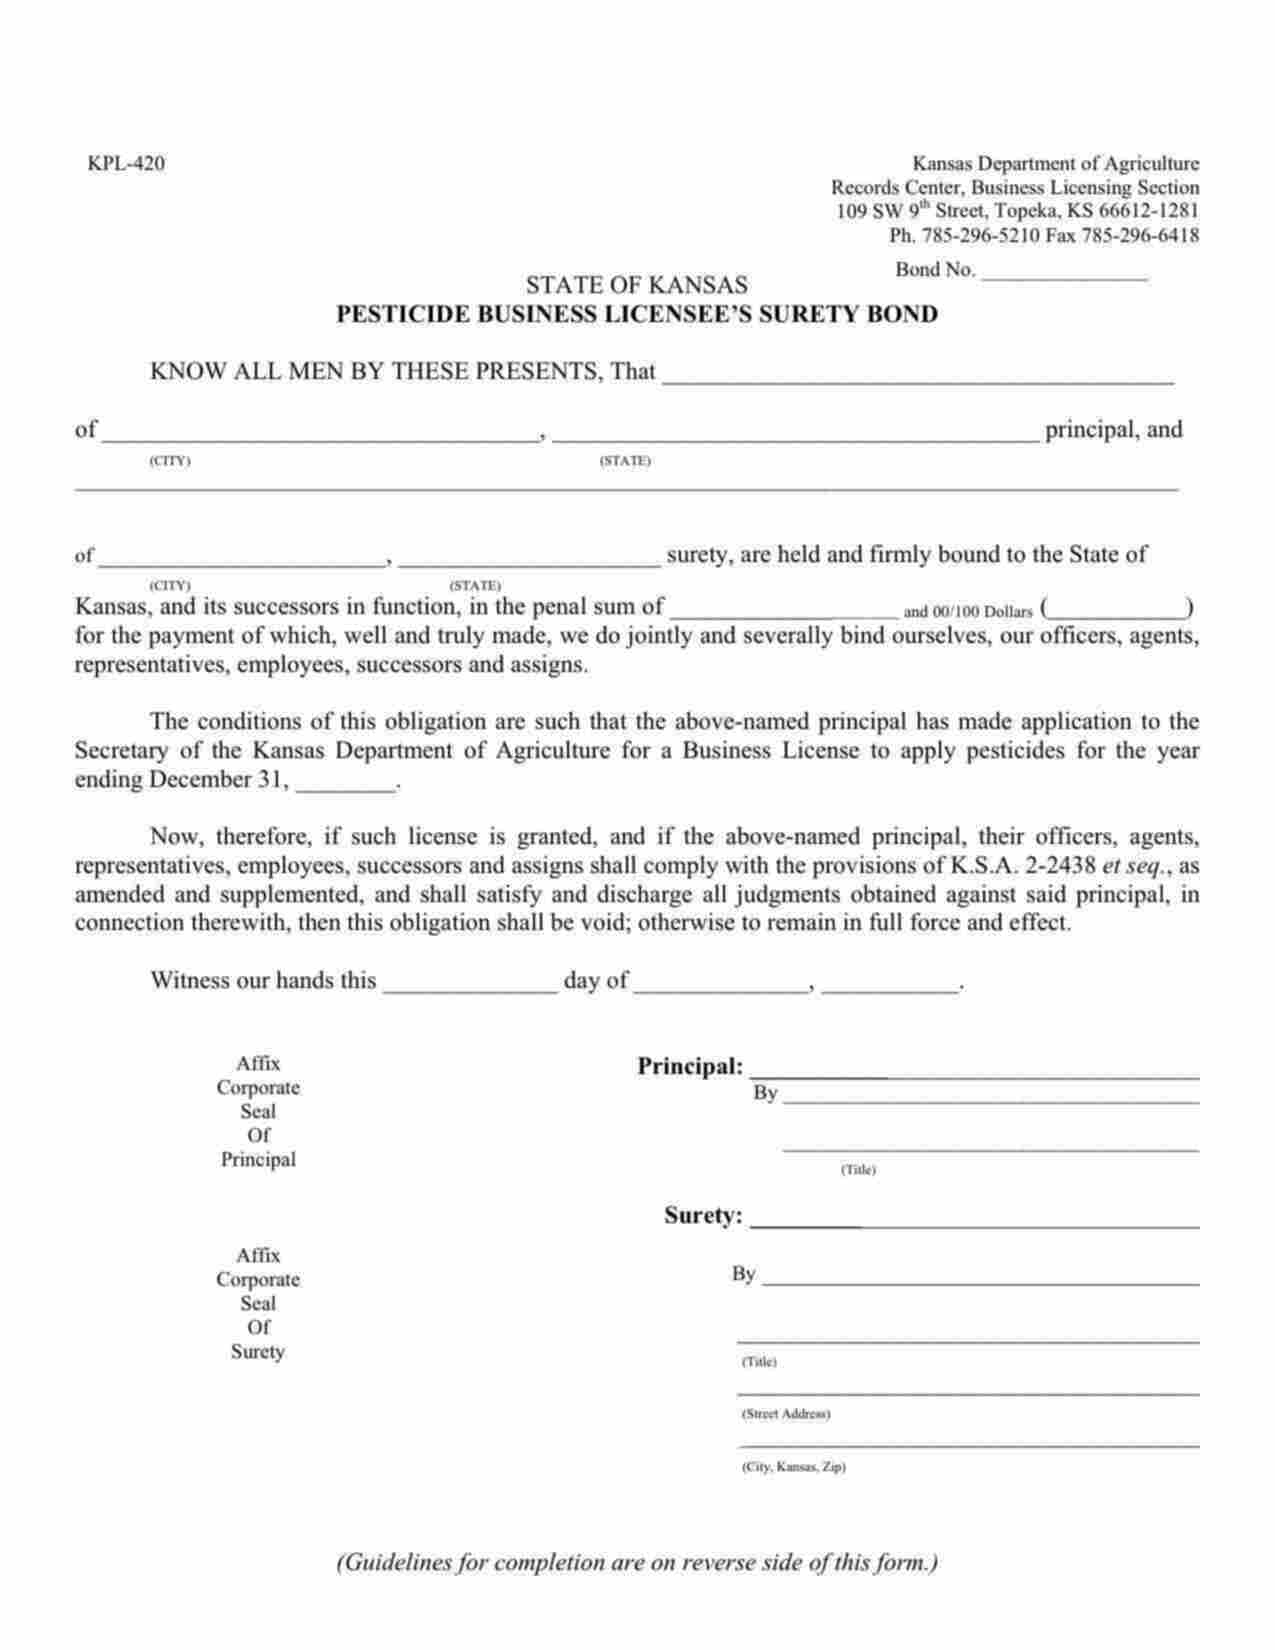 Kansas Pesticide Business License Bond Form